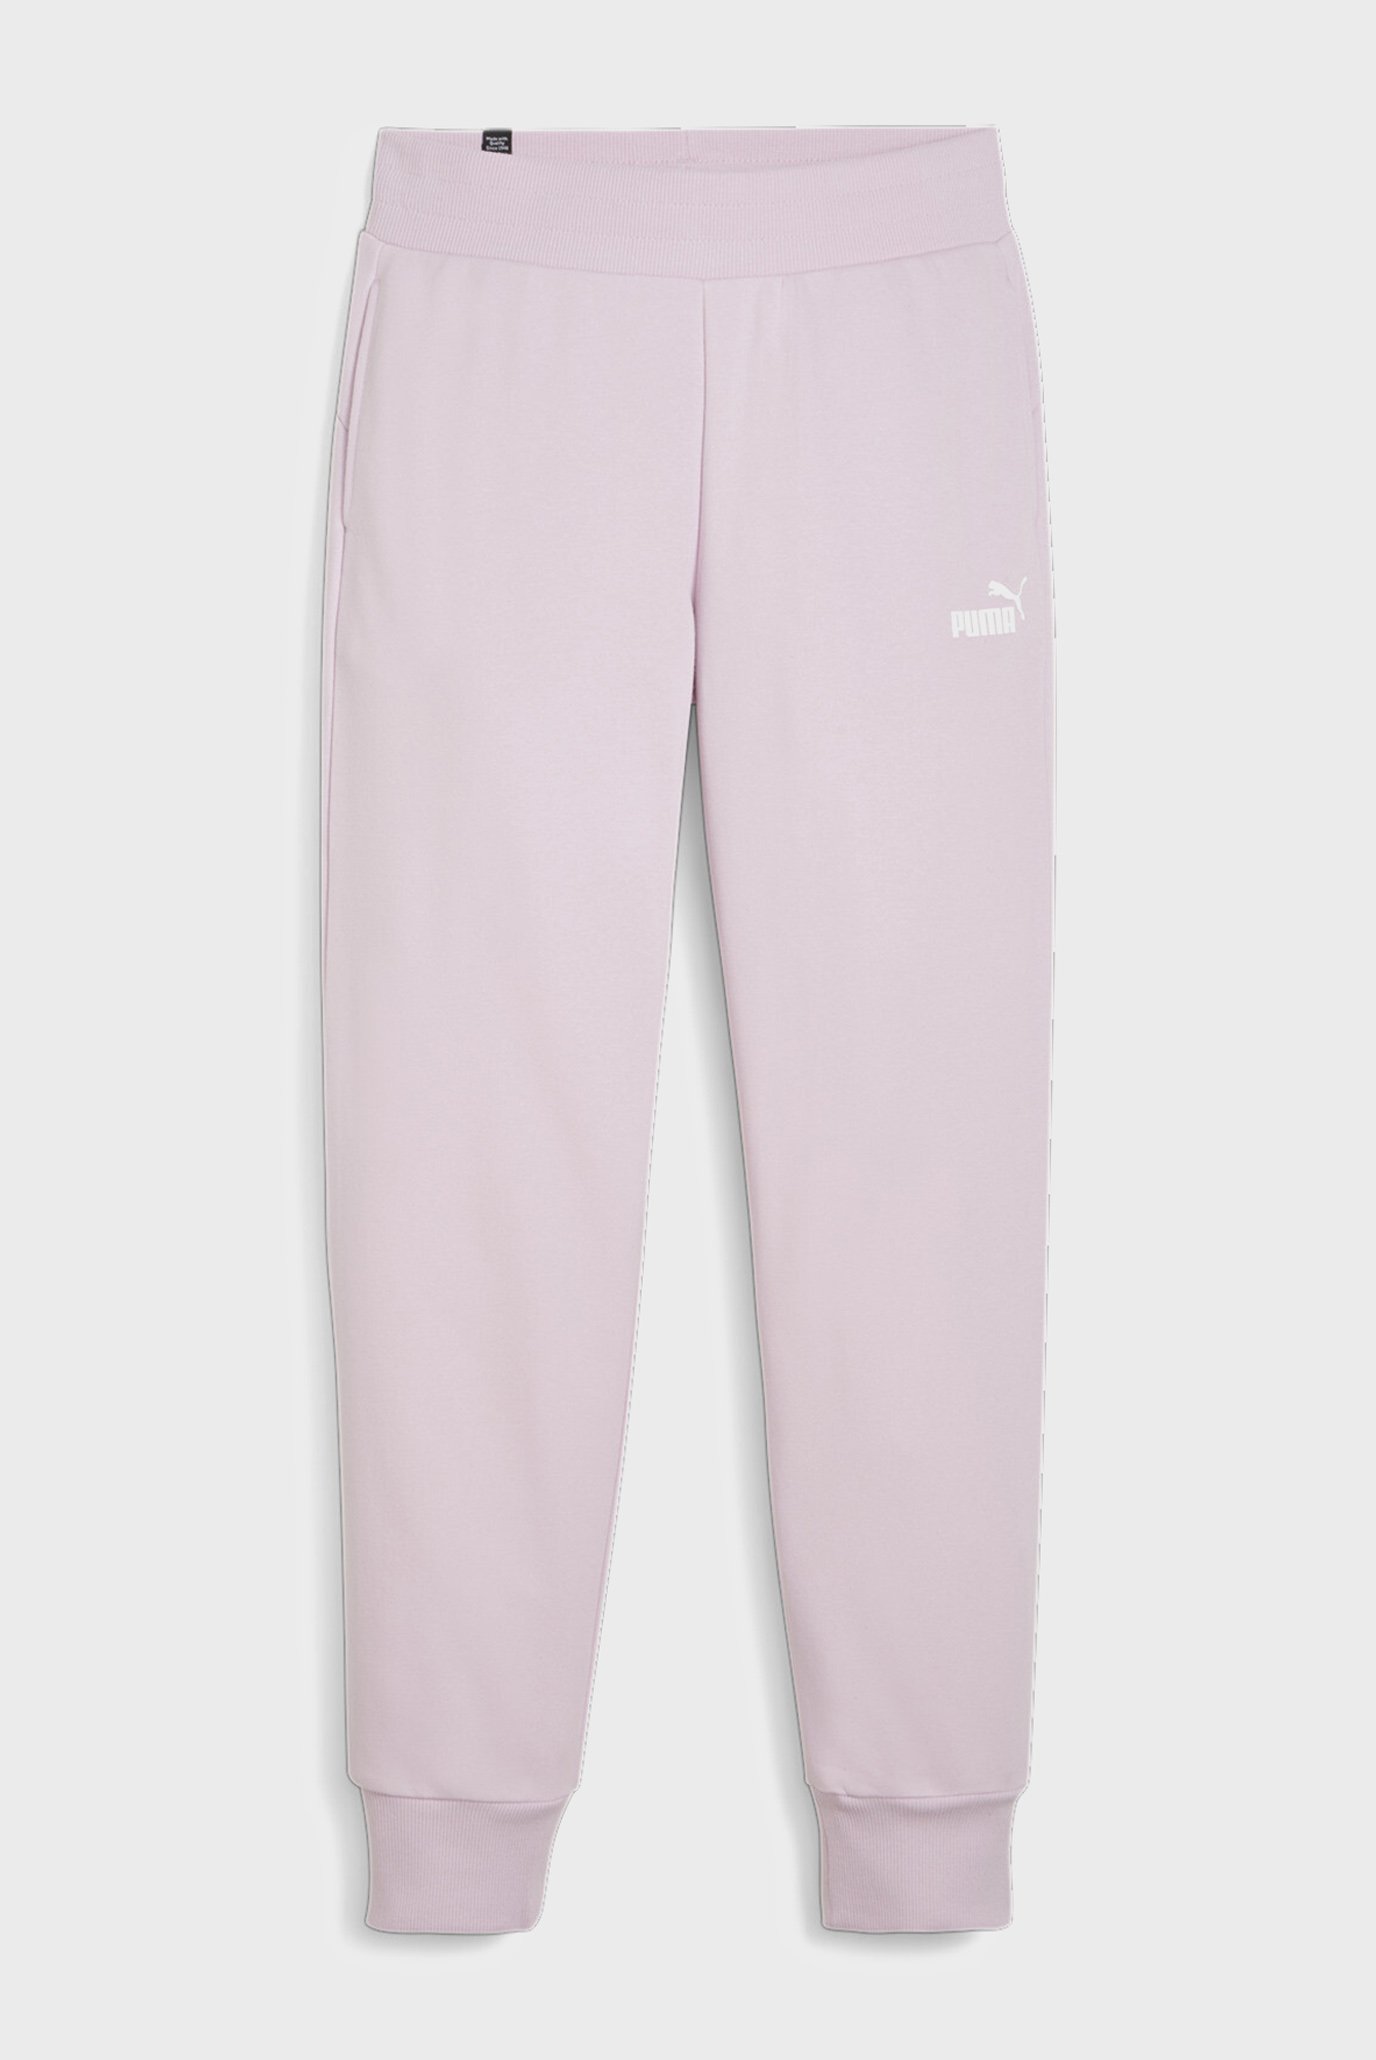 Жіночі бузкові спортивні штани Essentials Women's Sweatpants 1